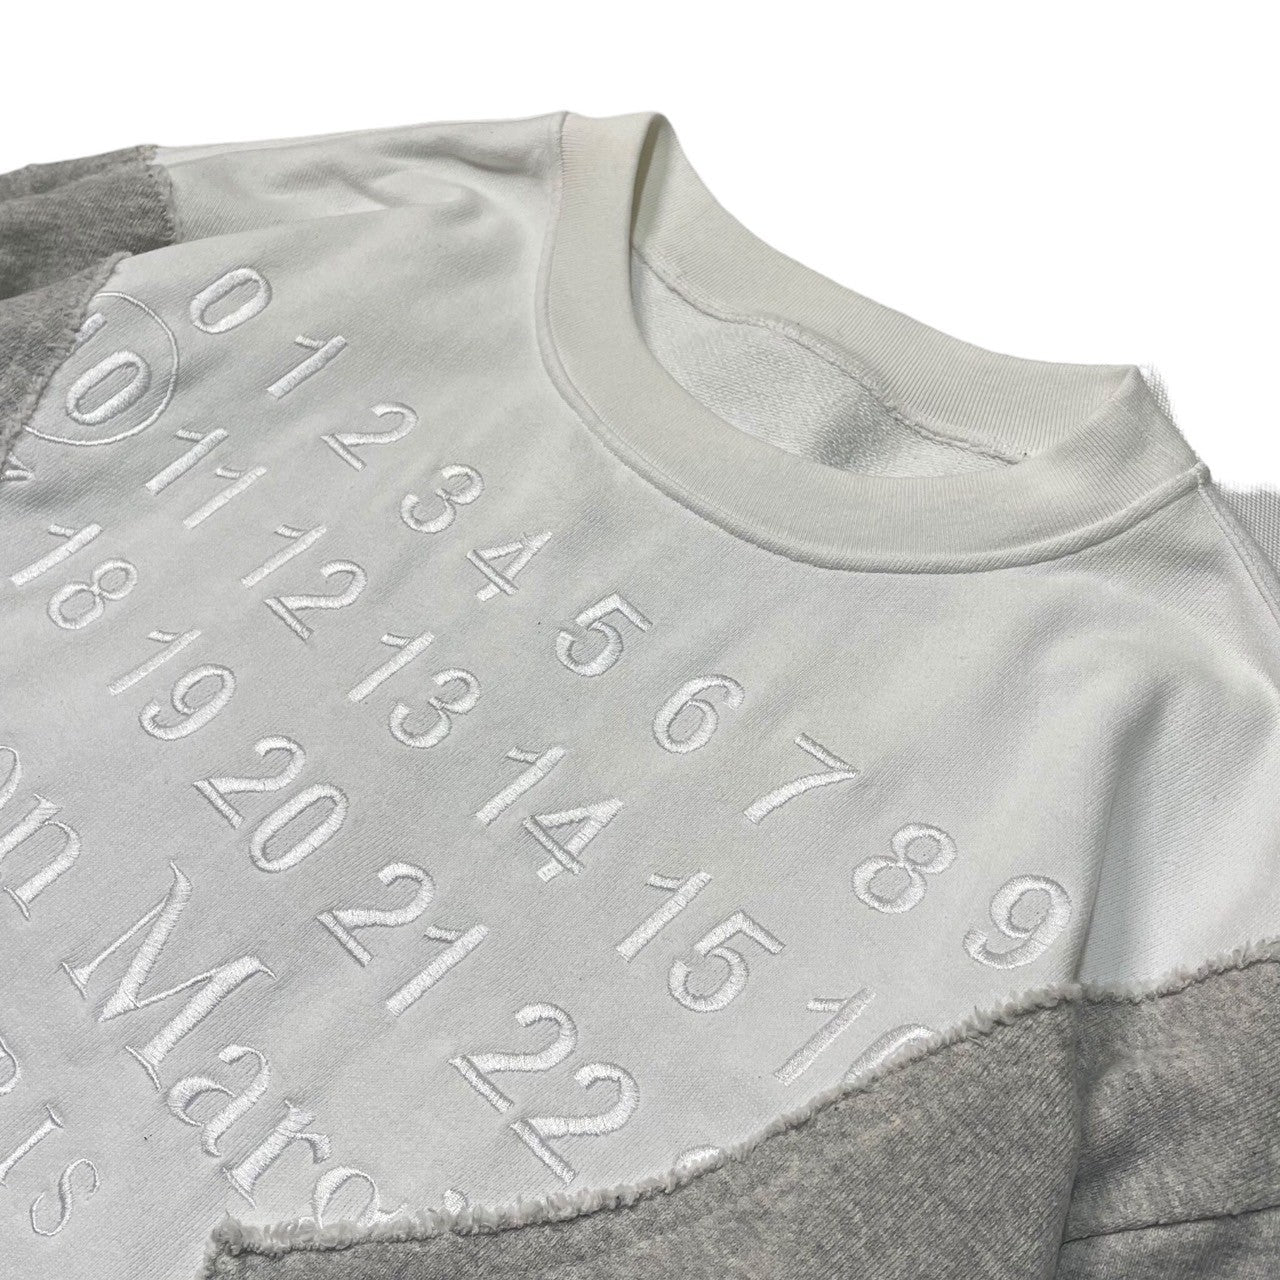 MAISON MARGIELA(メゾンマルジェラ) 20AW Reconstructed Calendar Sweatshirt 再構築 カレンダー  刺繍 ロゴ スウェット ドッキング S50GU0129 46(M程度) ホワイト×グレー